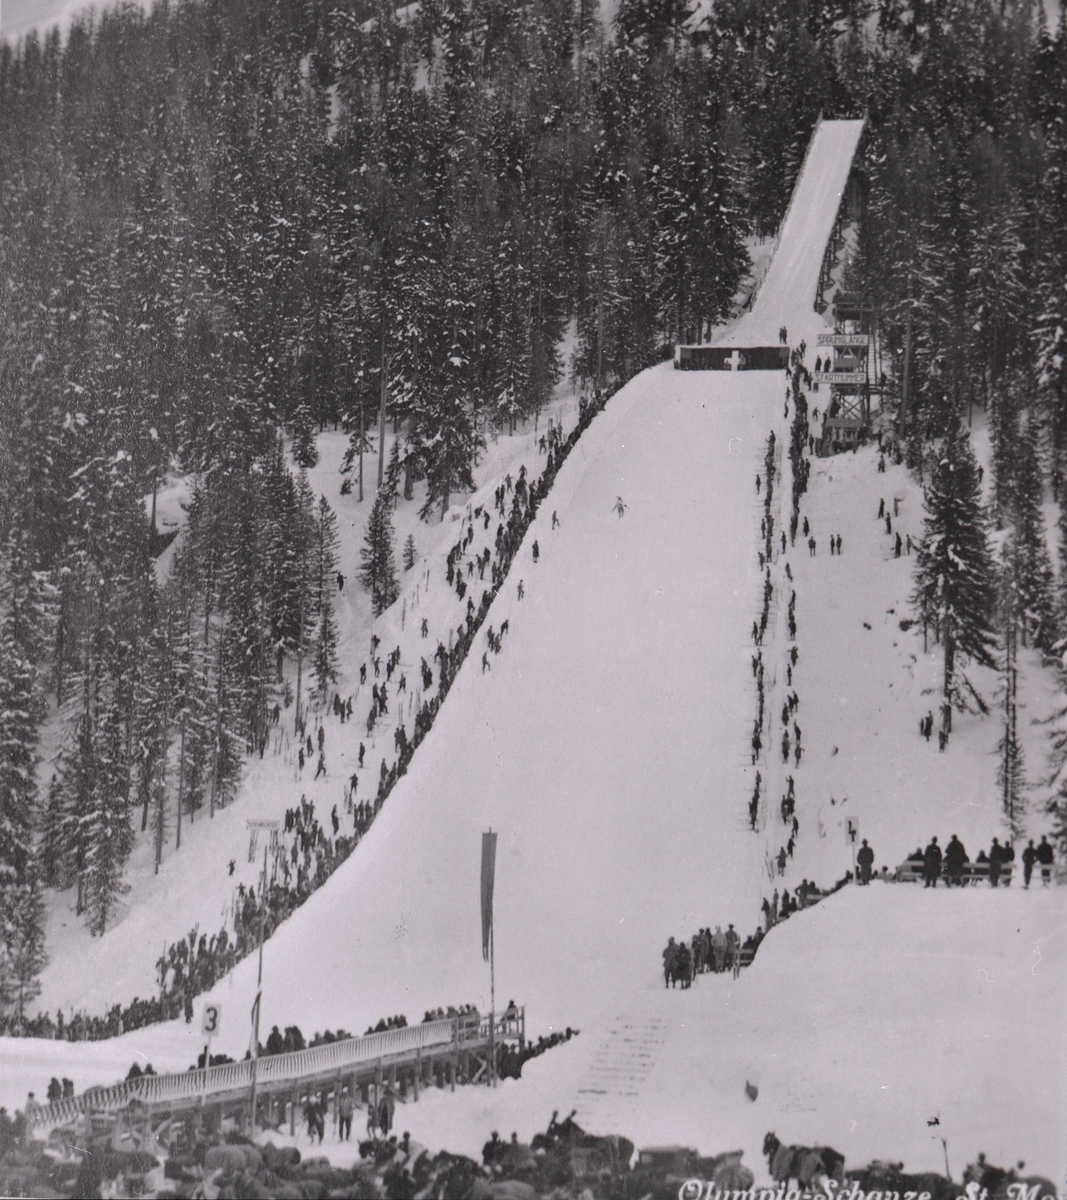 Ski jumping facilities at St. Morits